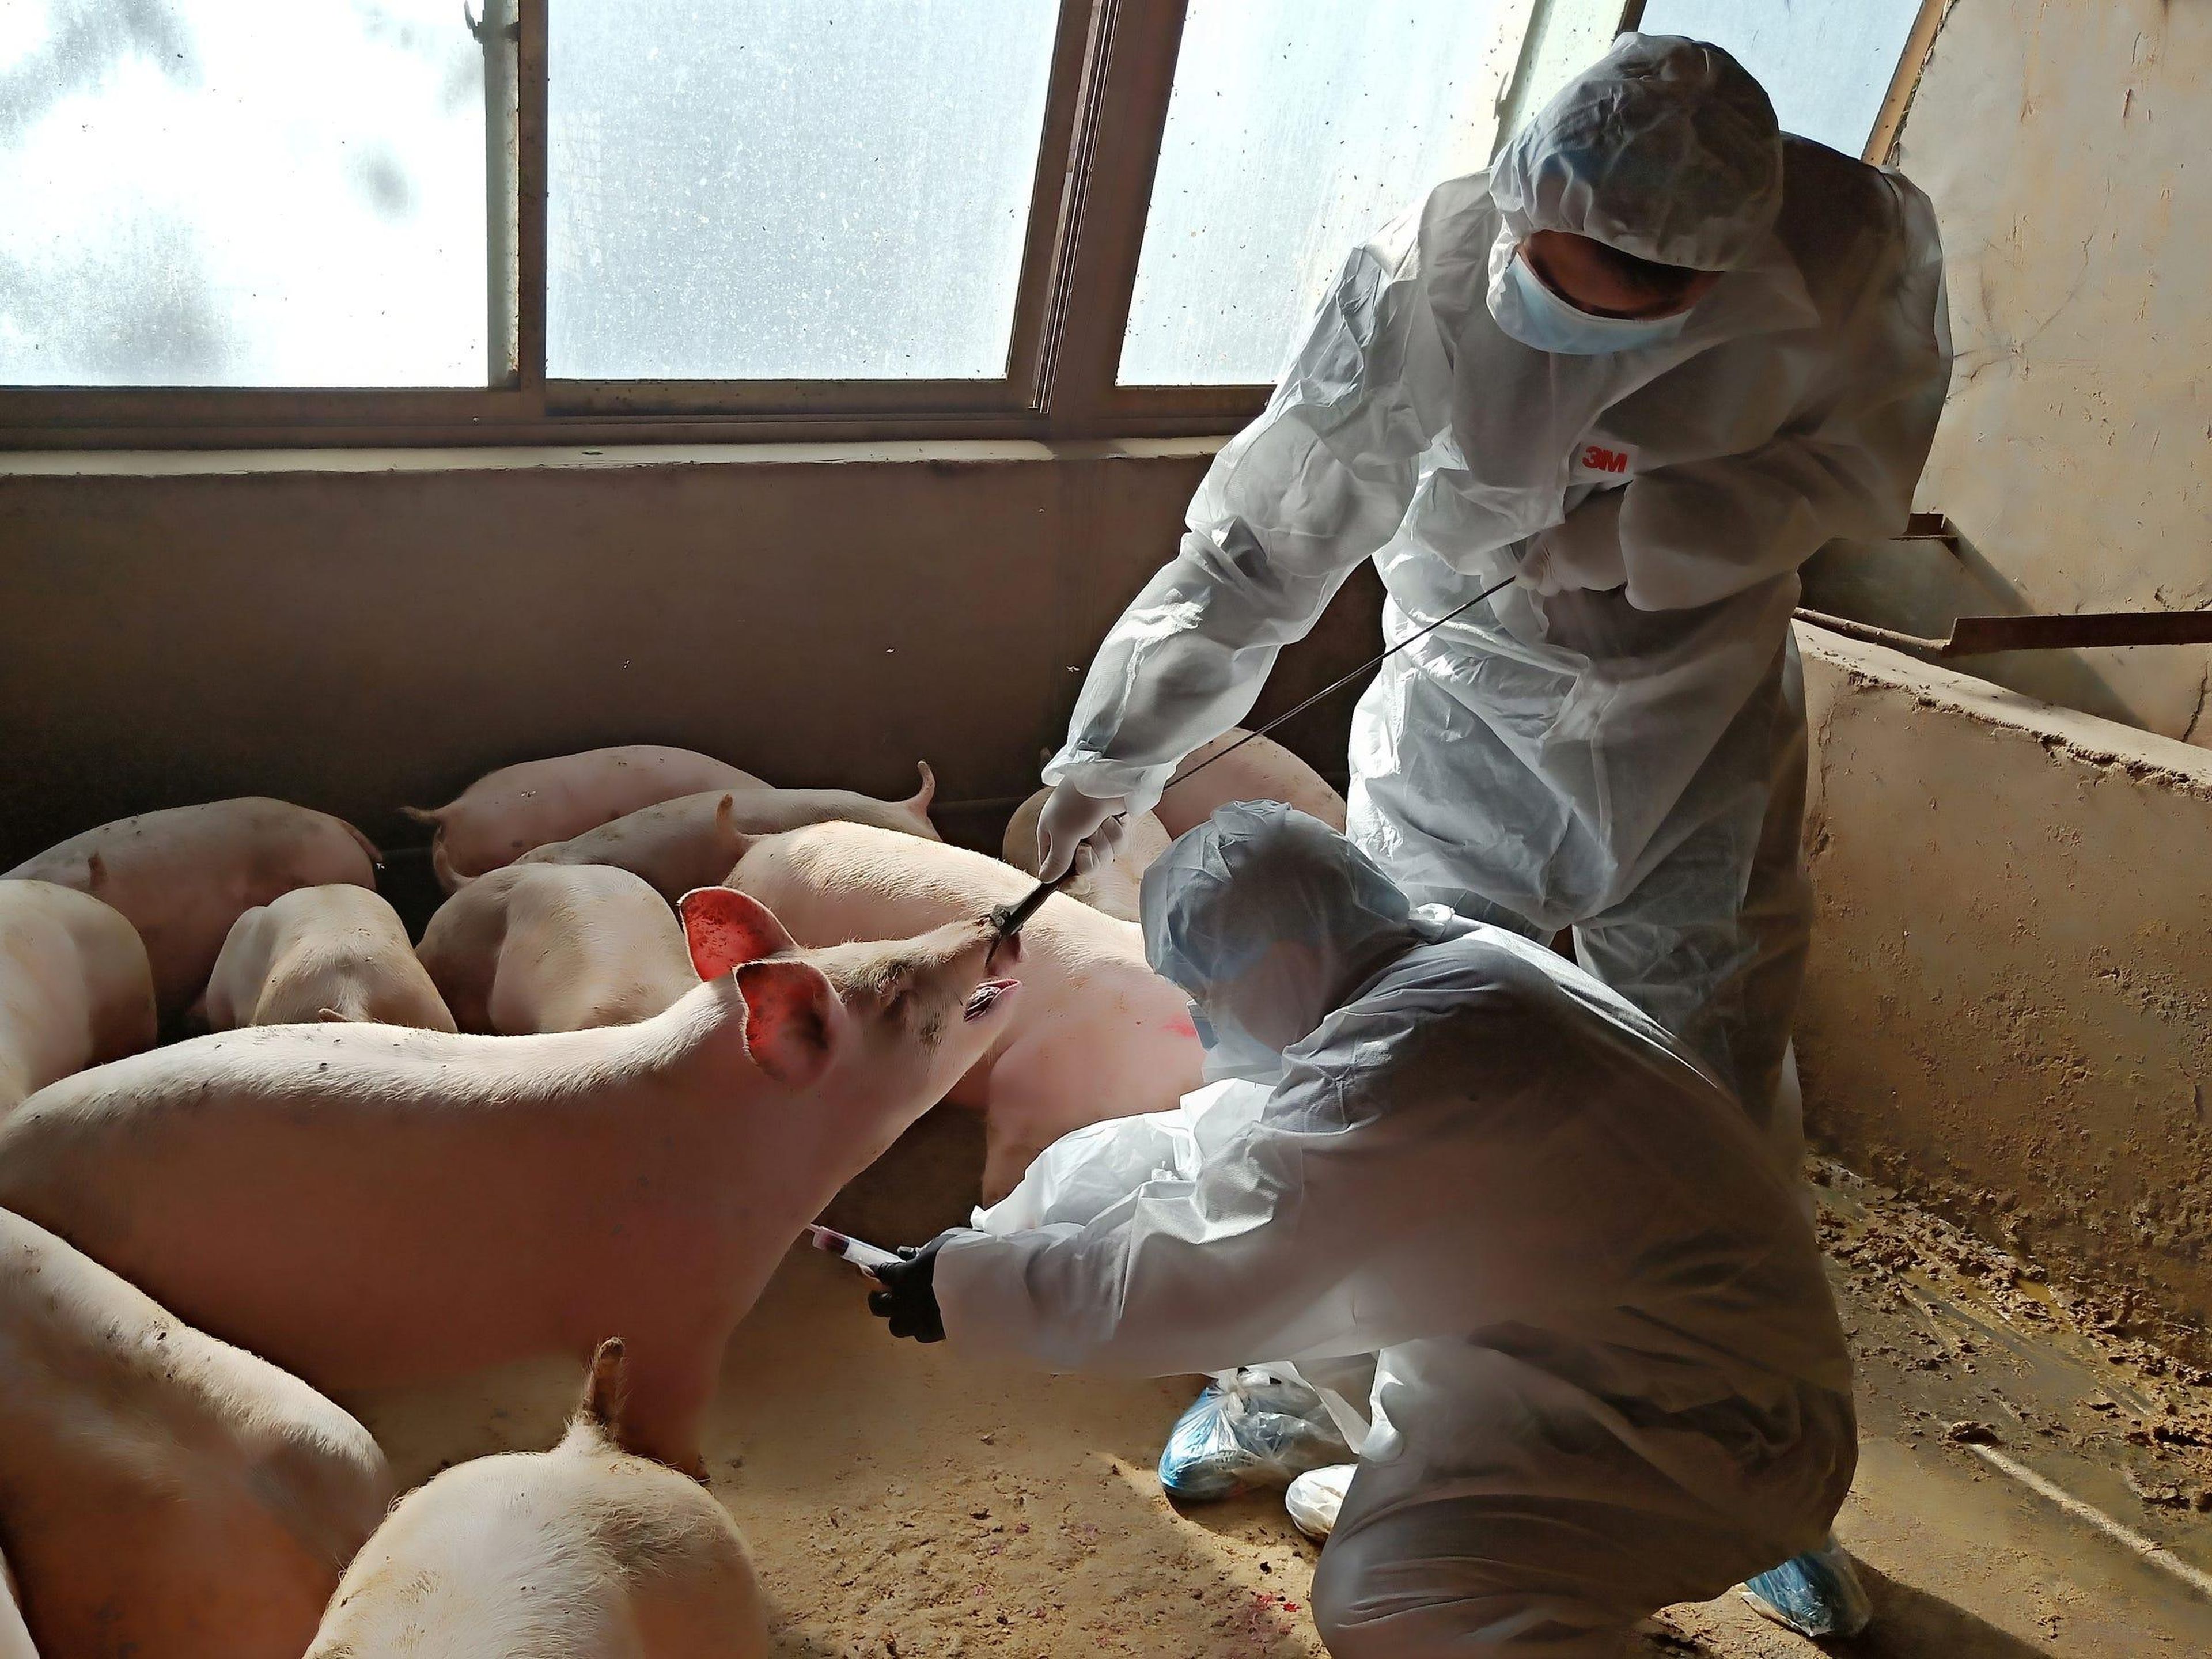 Los trabajadores de una granja de animales local recogen una muestra de sangre de un cerdo en Zhangye, provincia de Gansu (China), el 28 de octubre de 2019.